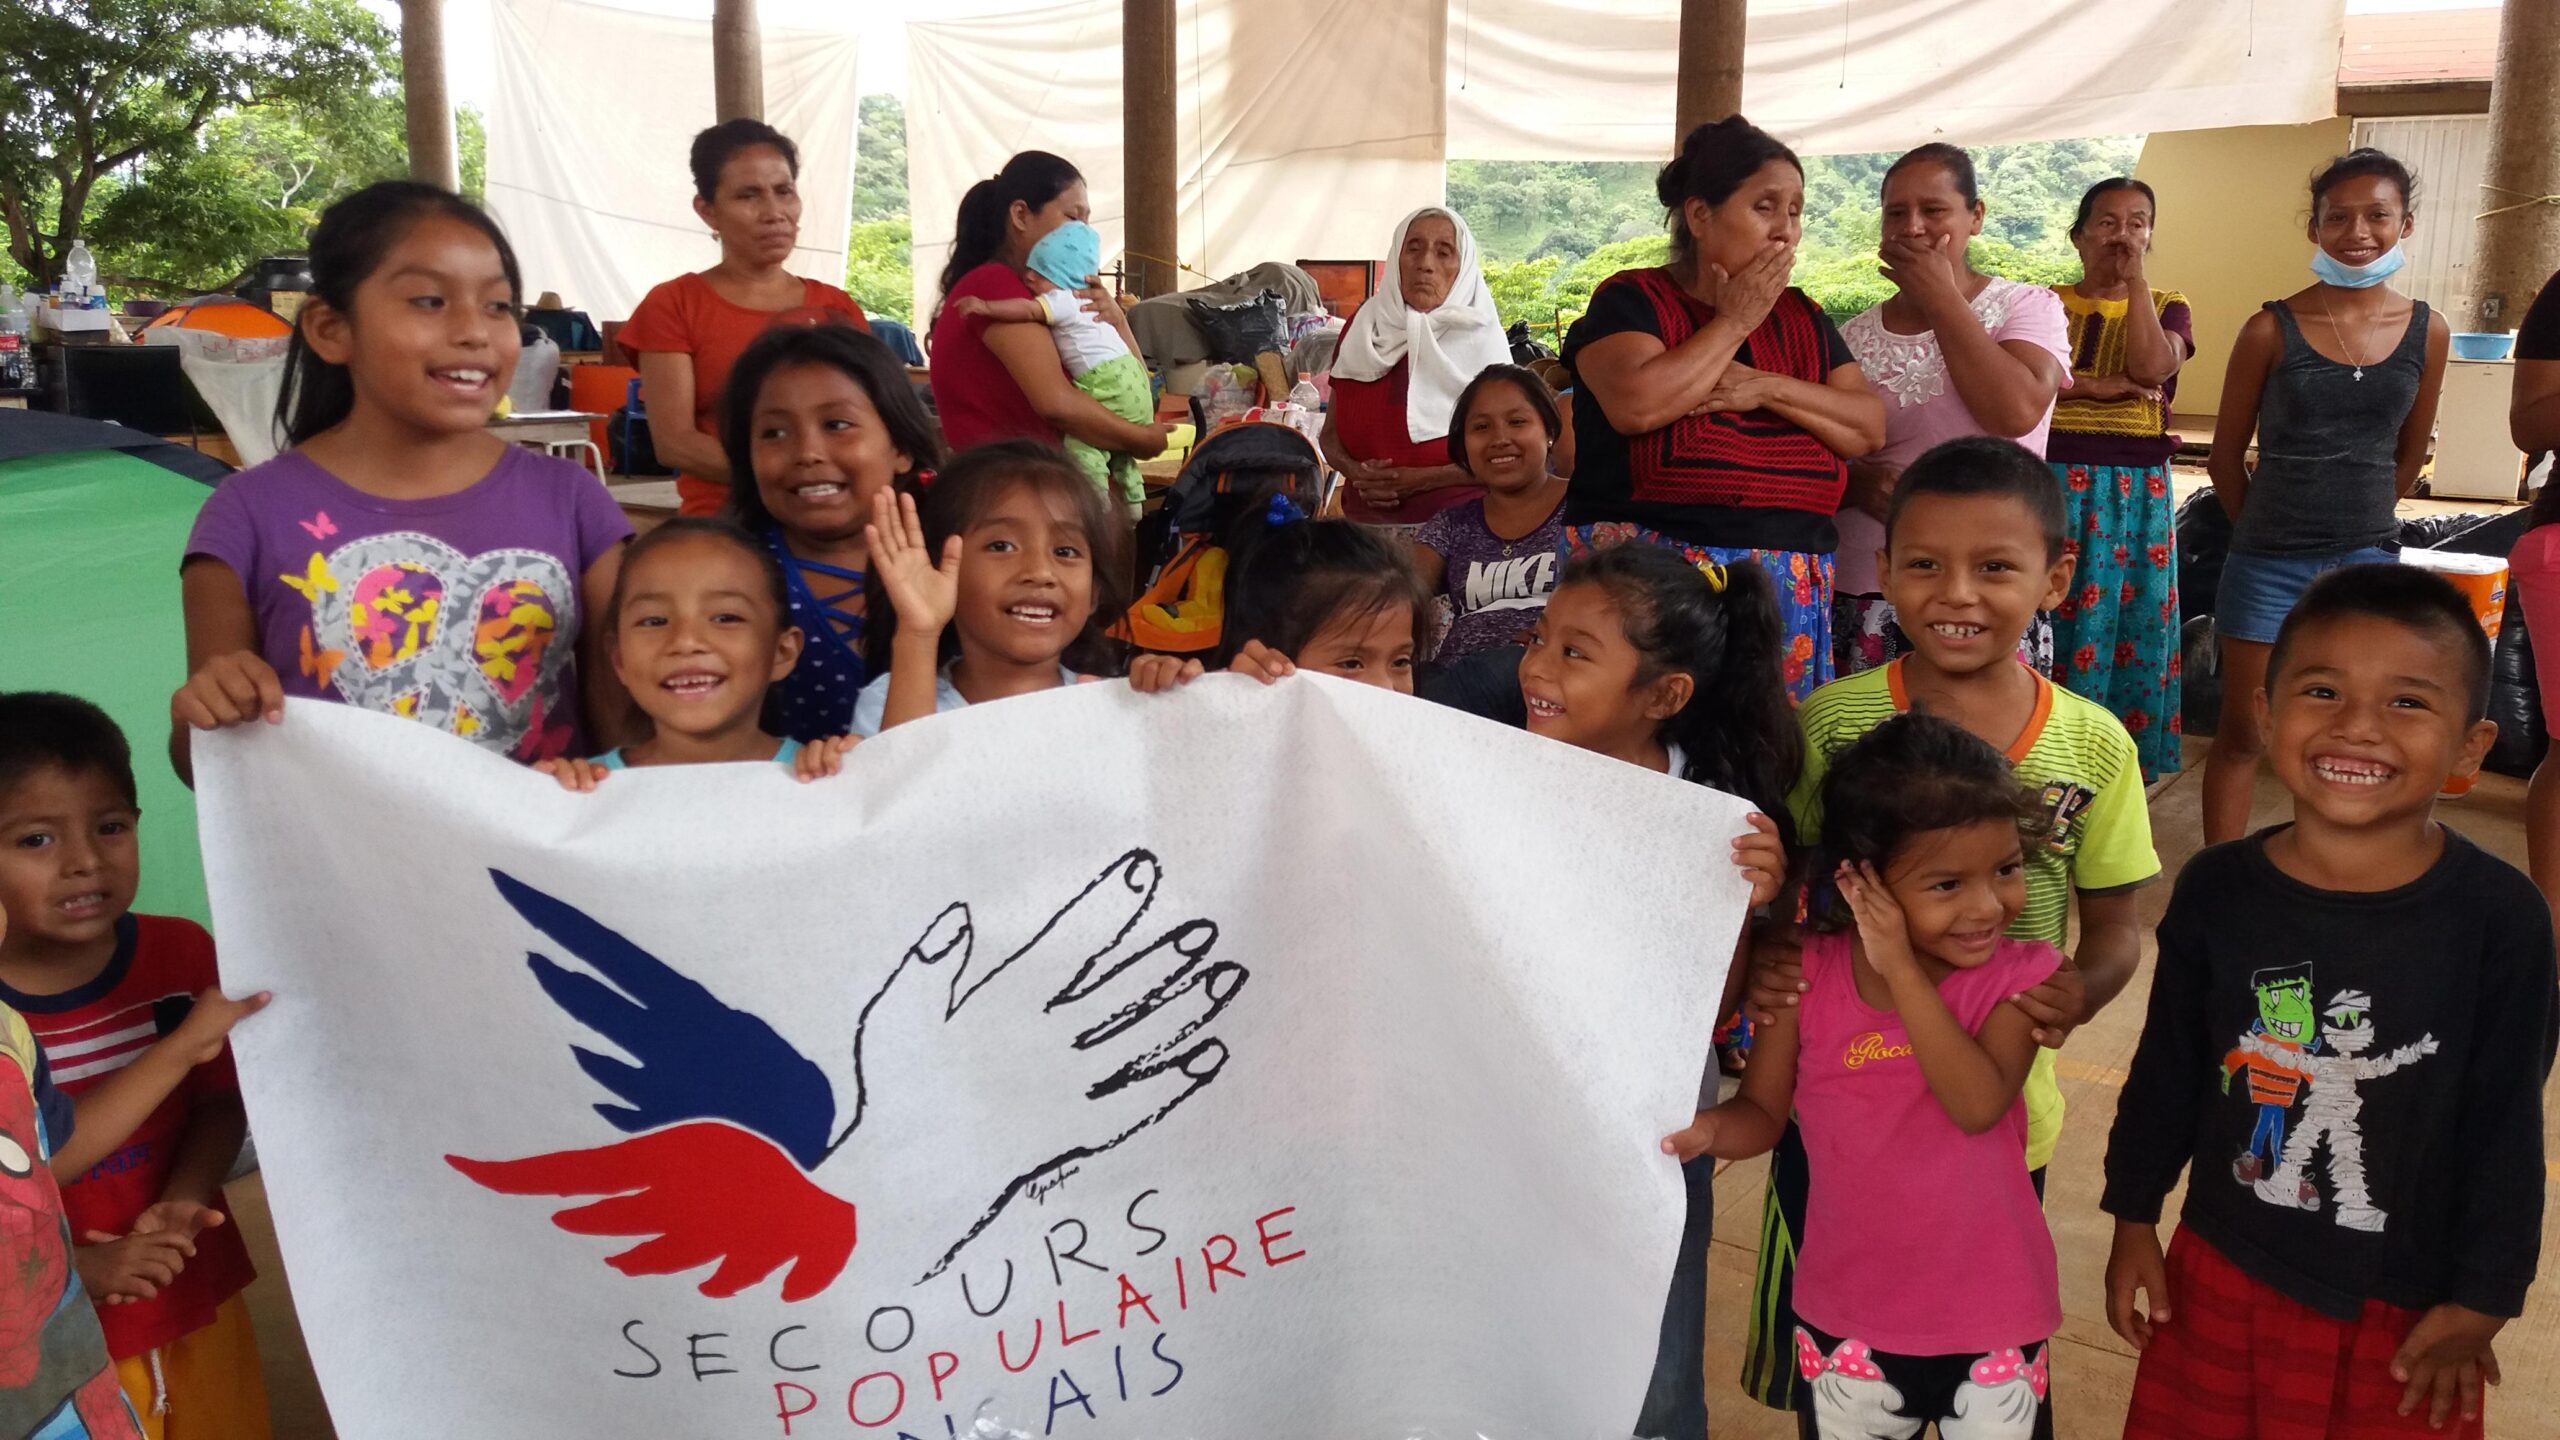 Les enfants aux Antilles et au Mexique font l'expérience de la solidarité internationale, à travers l'aide acheminée par le SPF et ses partenaires.